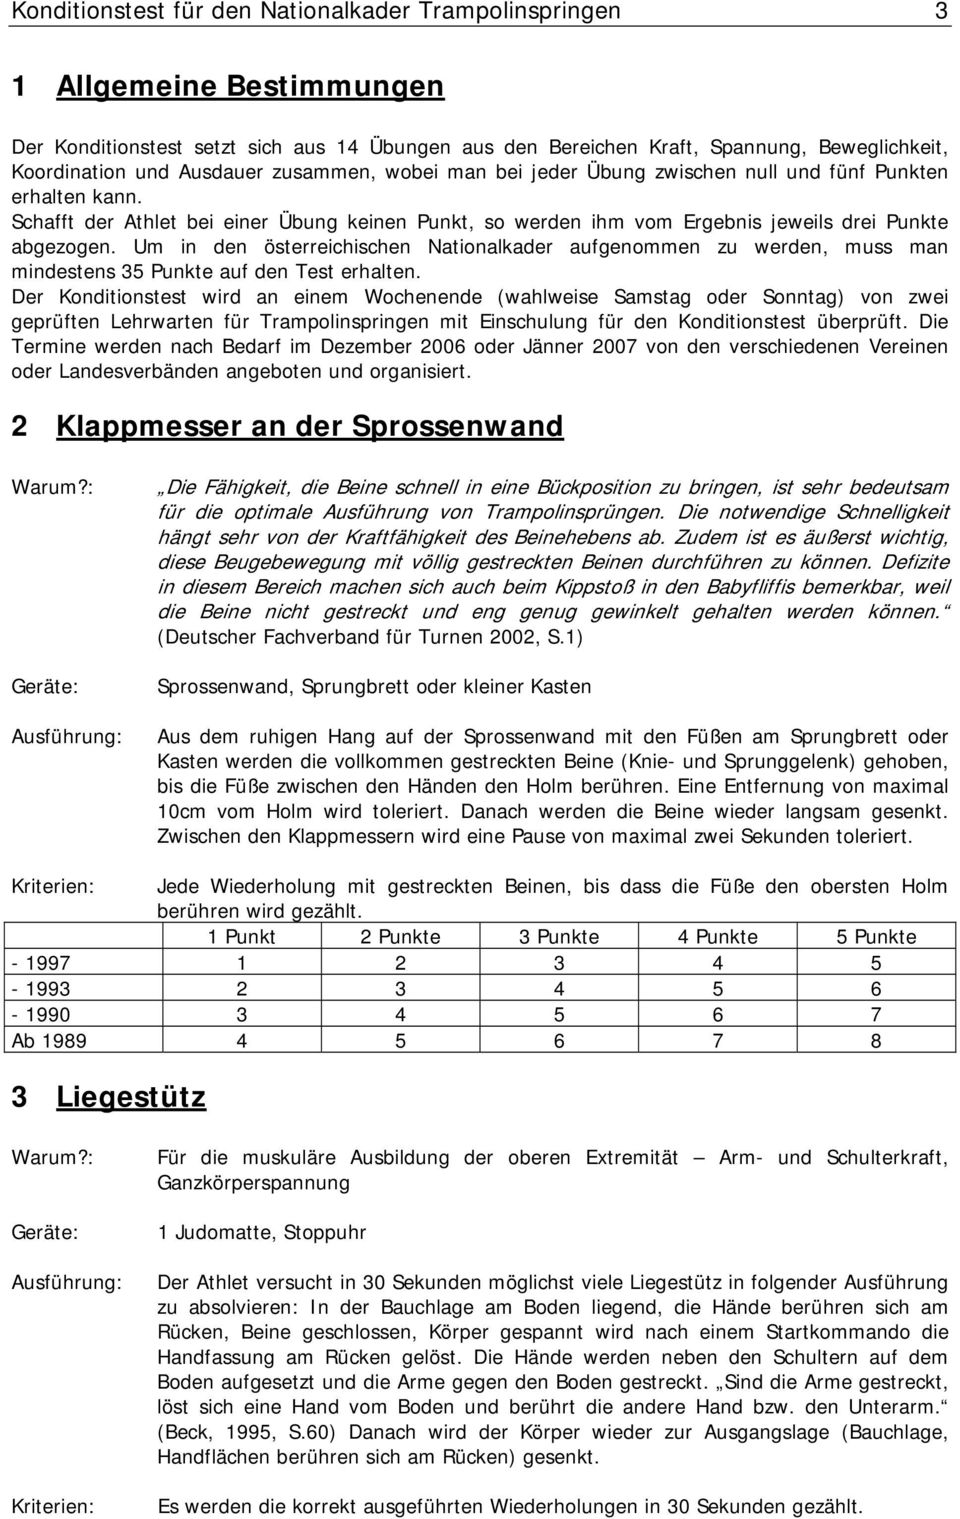 Um in den österreichischen Nationalkader aufgenommen zu werden, muss man mindestens 35 Punkte auf den Test erhalten.